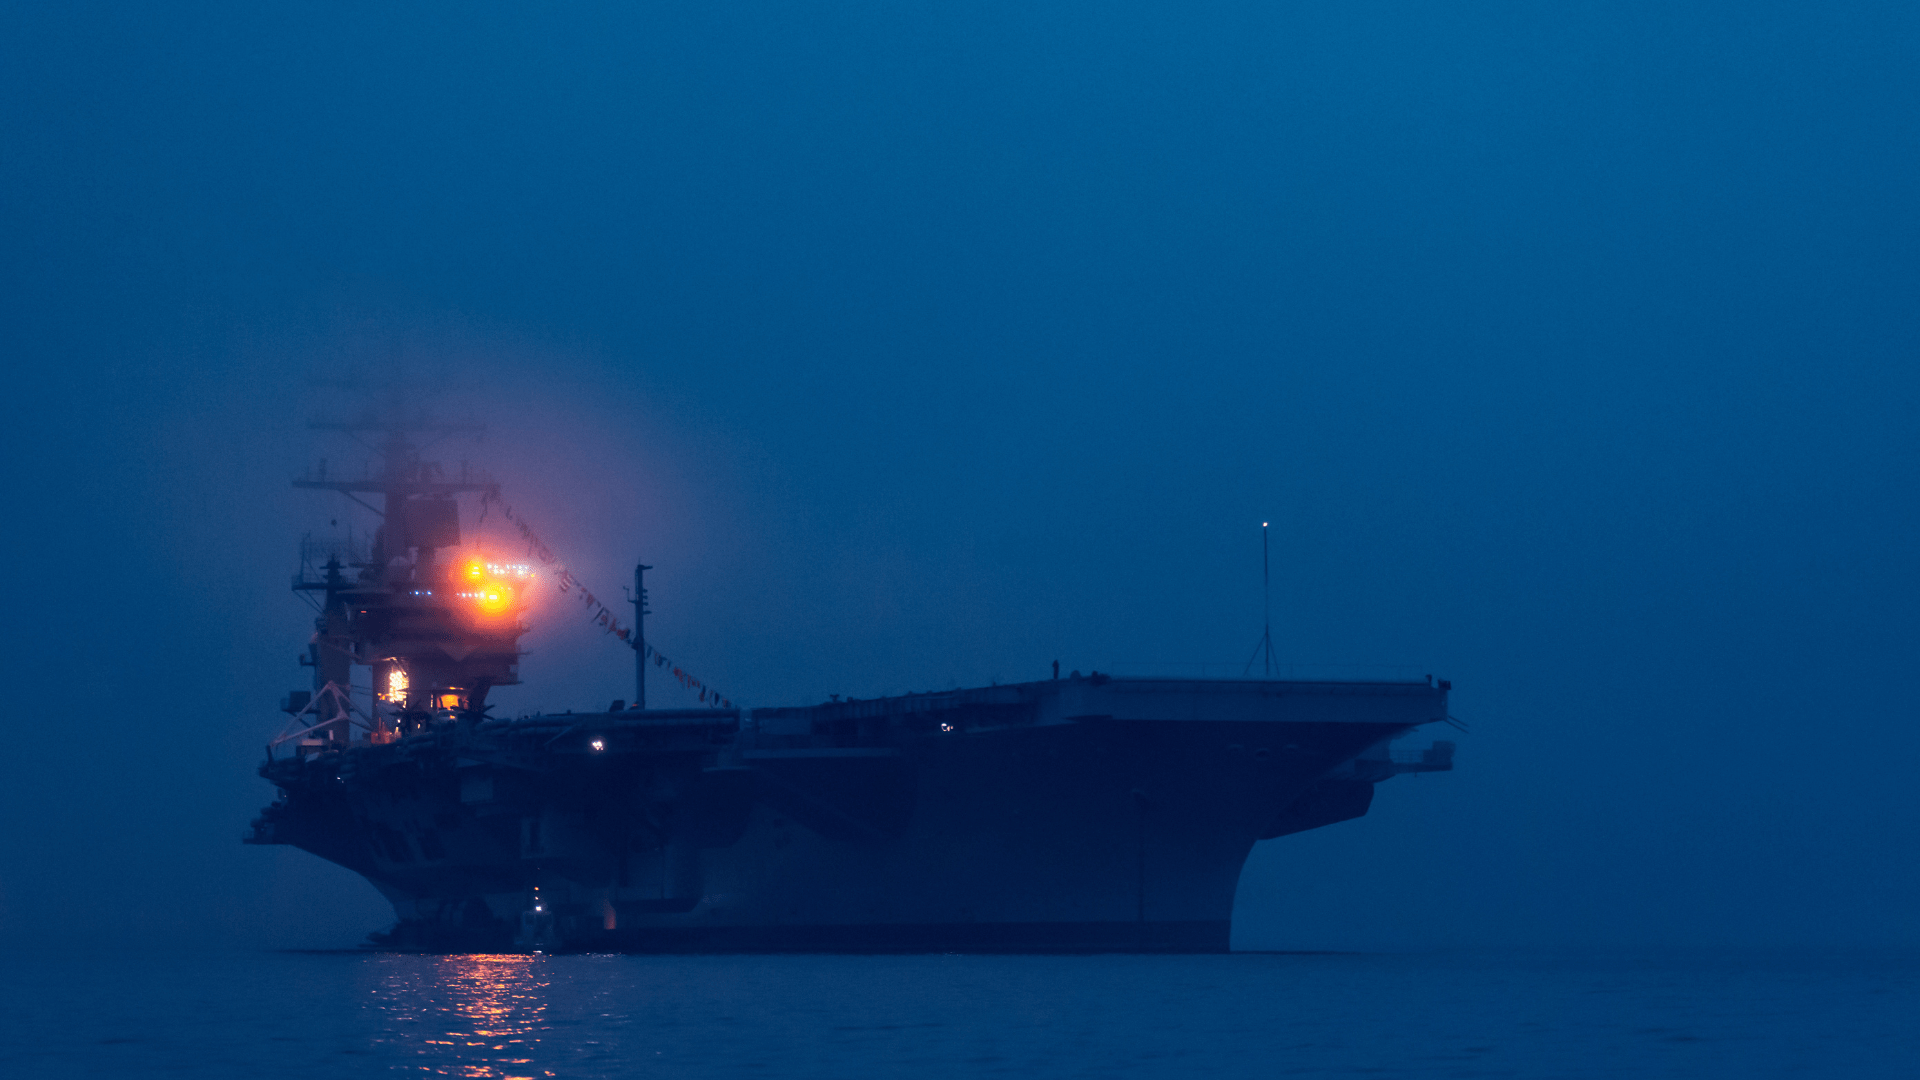 US Navy in dark lighting conditions